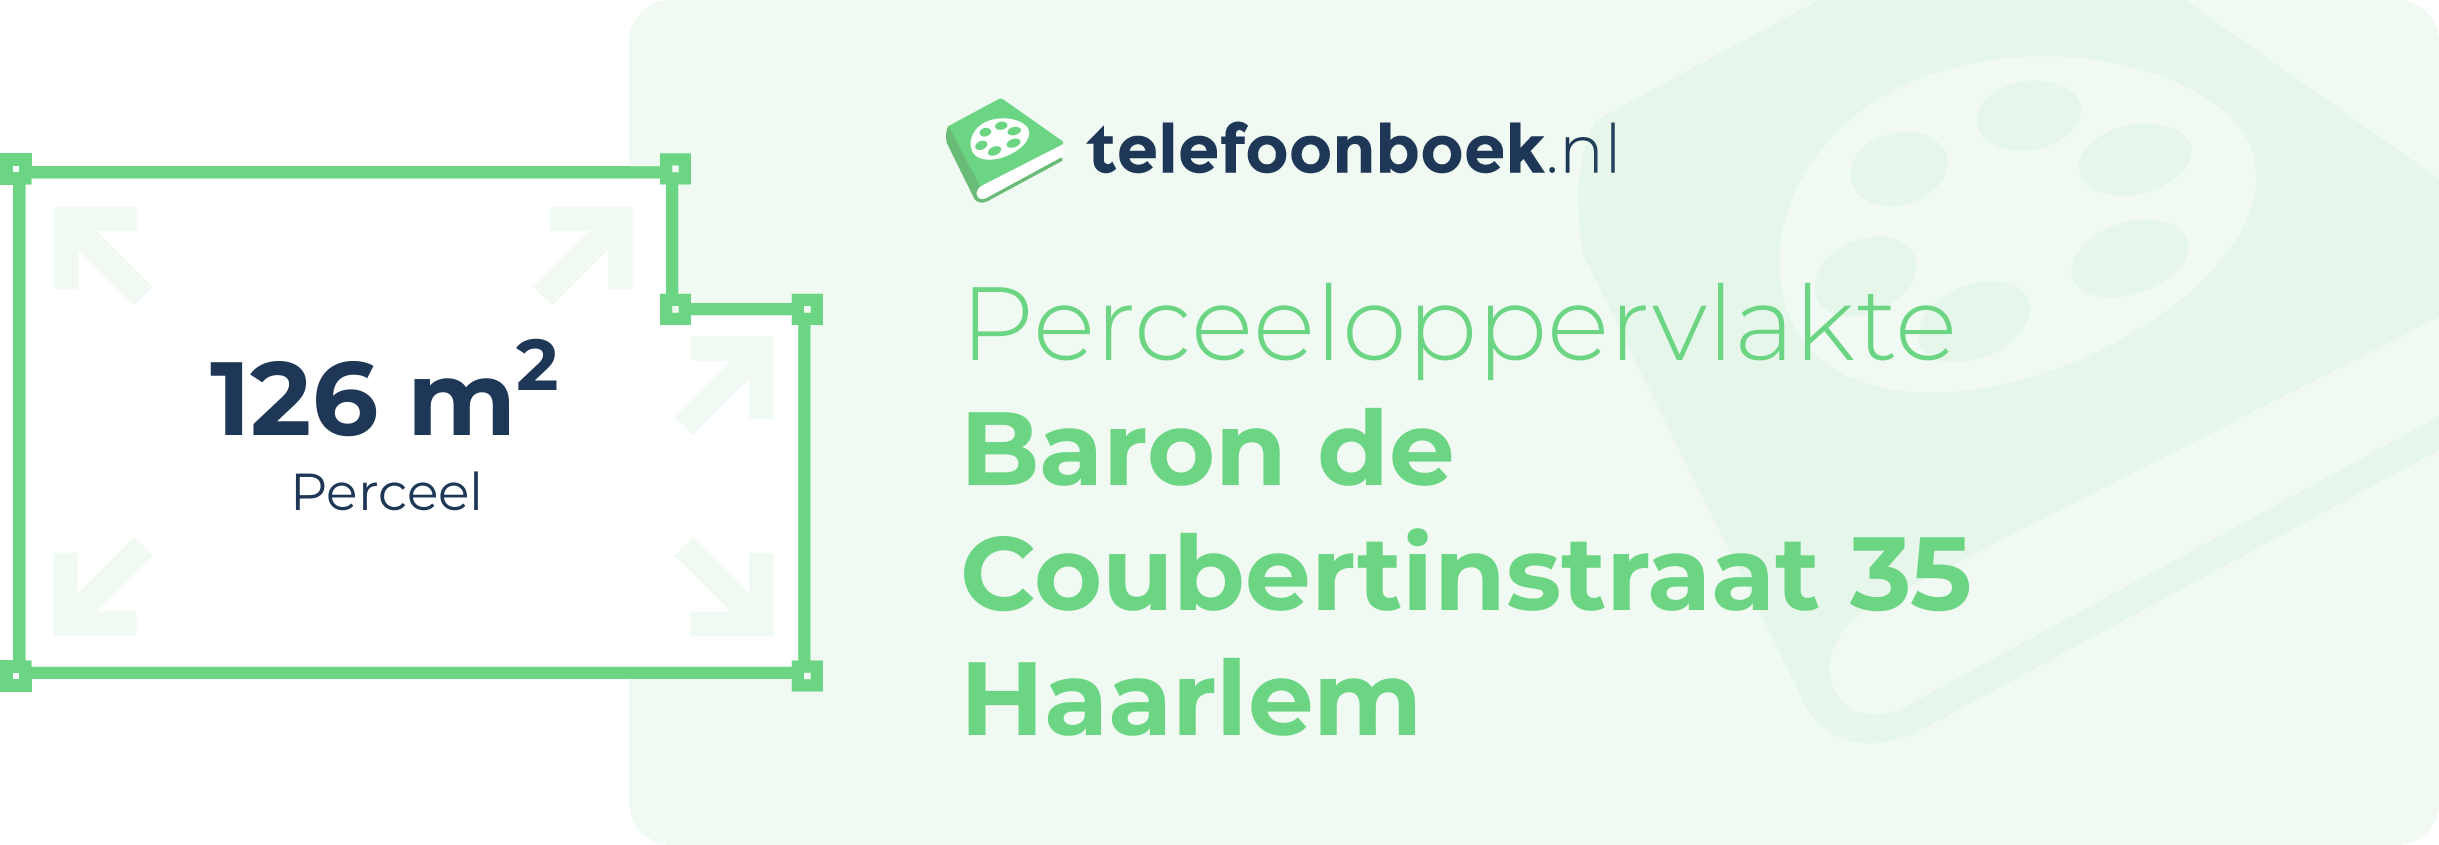 Perceeloppervlakte Baron De Coubertinstraat 35 Haarlem